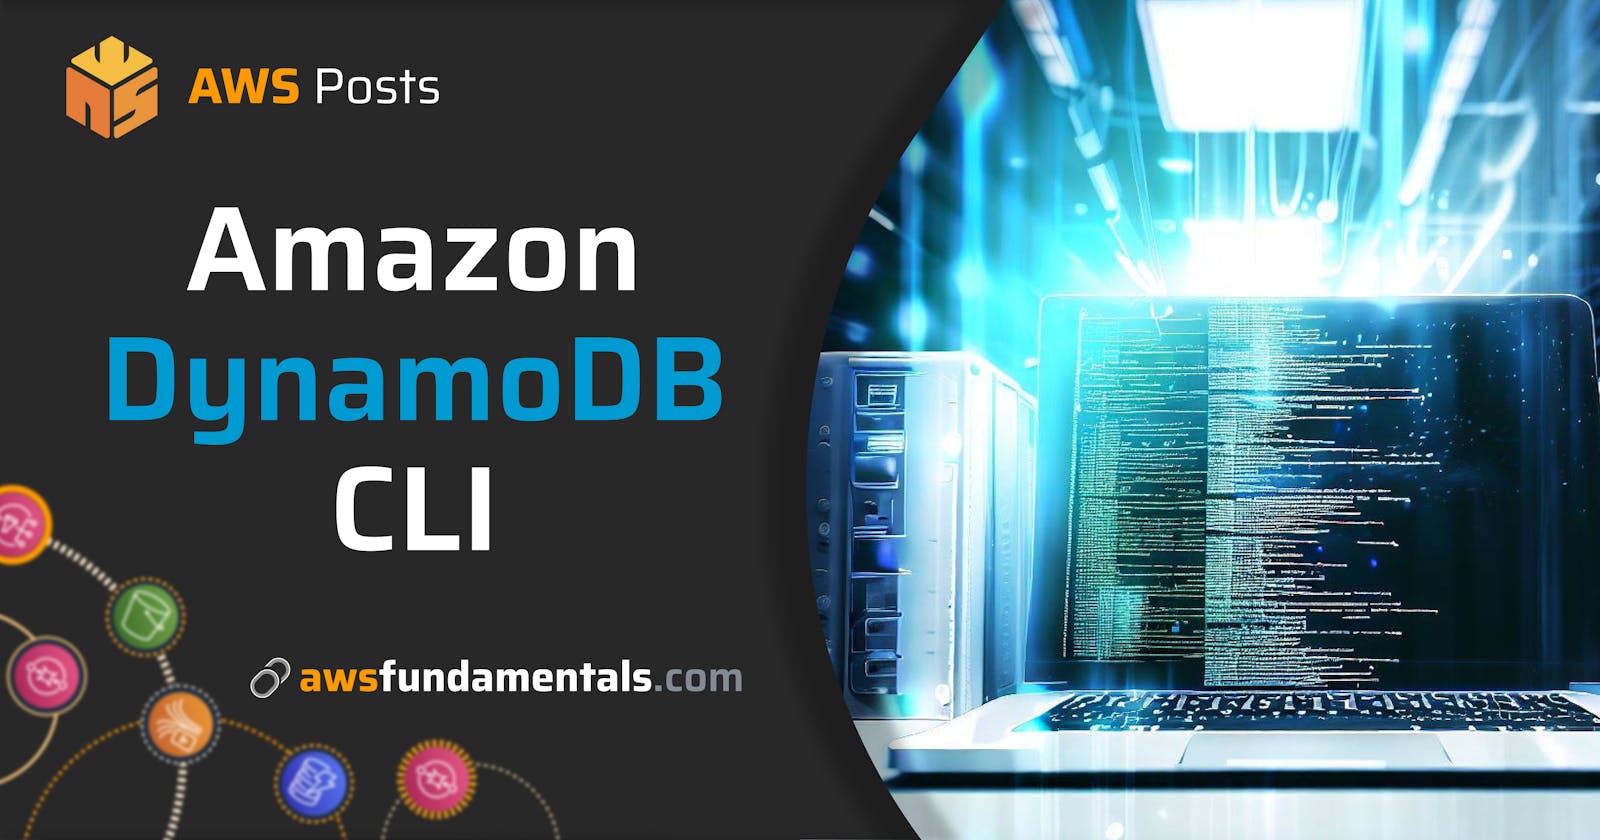 Amazon DynamoDB CLI - The Complete Guide